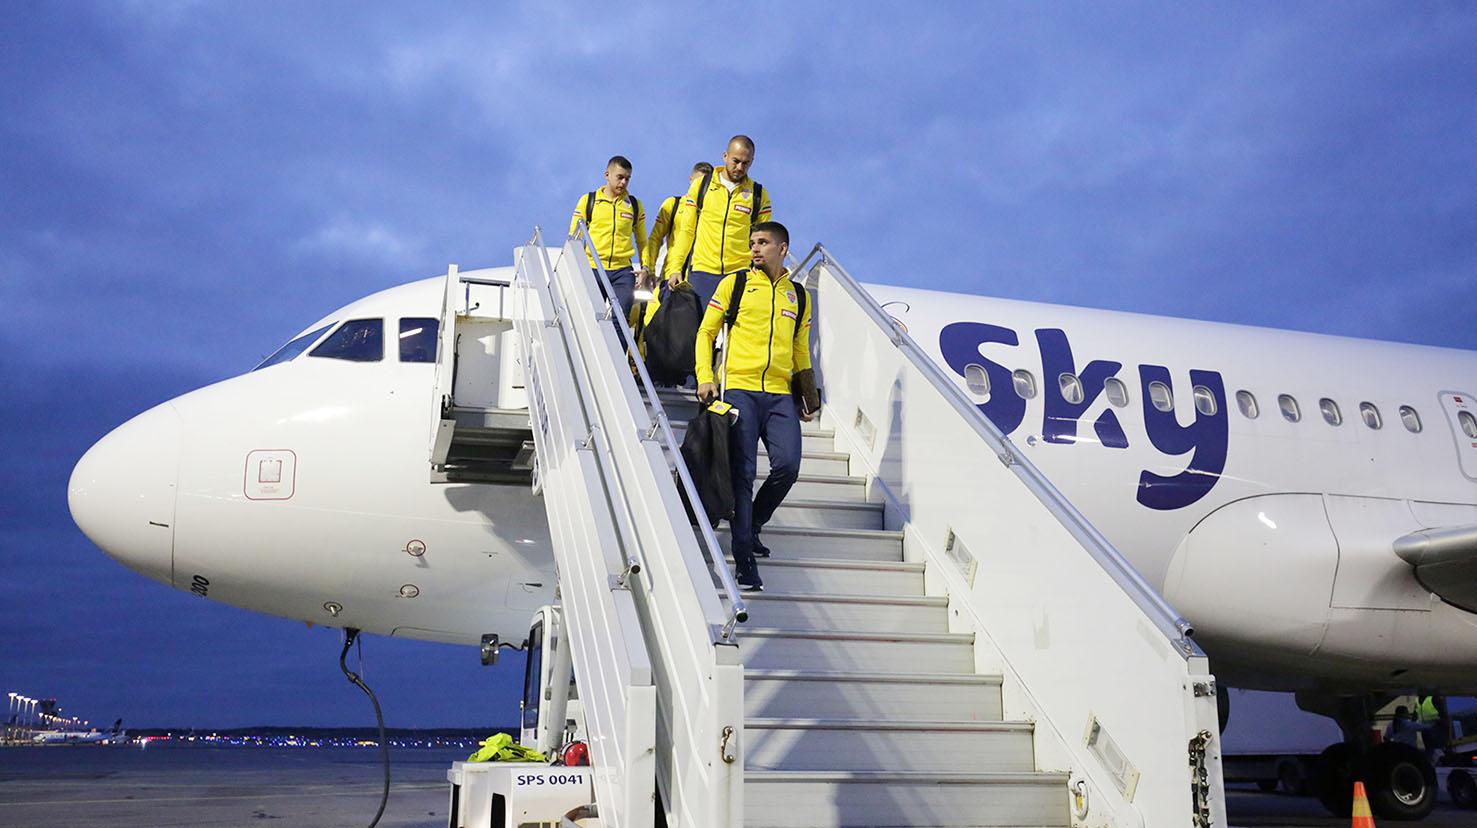 Alexandru Cicâldău, Denis Alibec, Răzvan Marin și ceilalți tricolori au ajuns la Helsinki pentru meciul de vineri cu Finlanda, din Grupa B3 a Ligii Națiuniulor